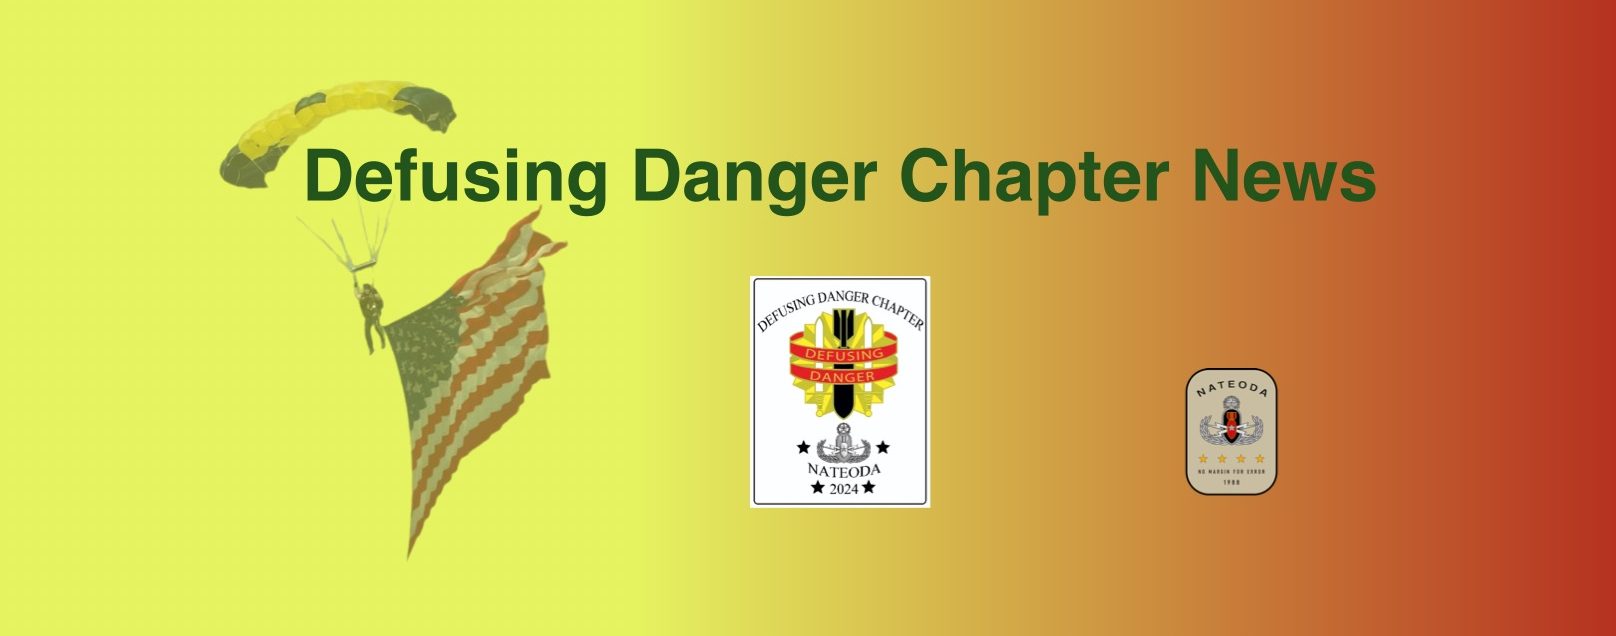 Defusing Danger Chapter News